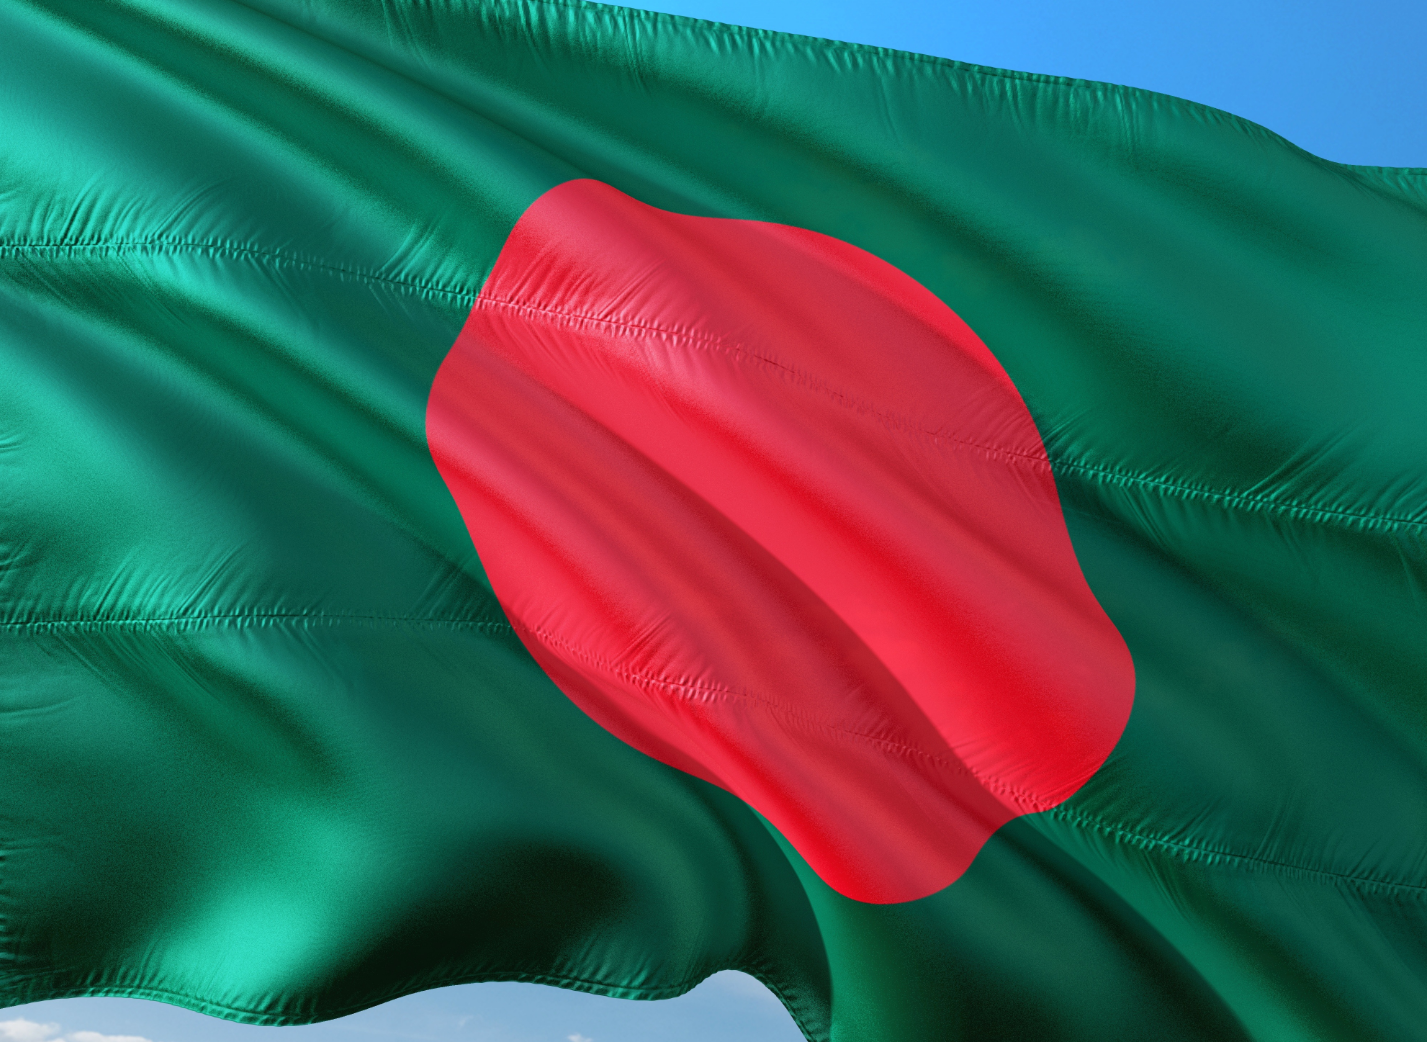 Bangladesh borrows $940M for COVID-19